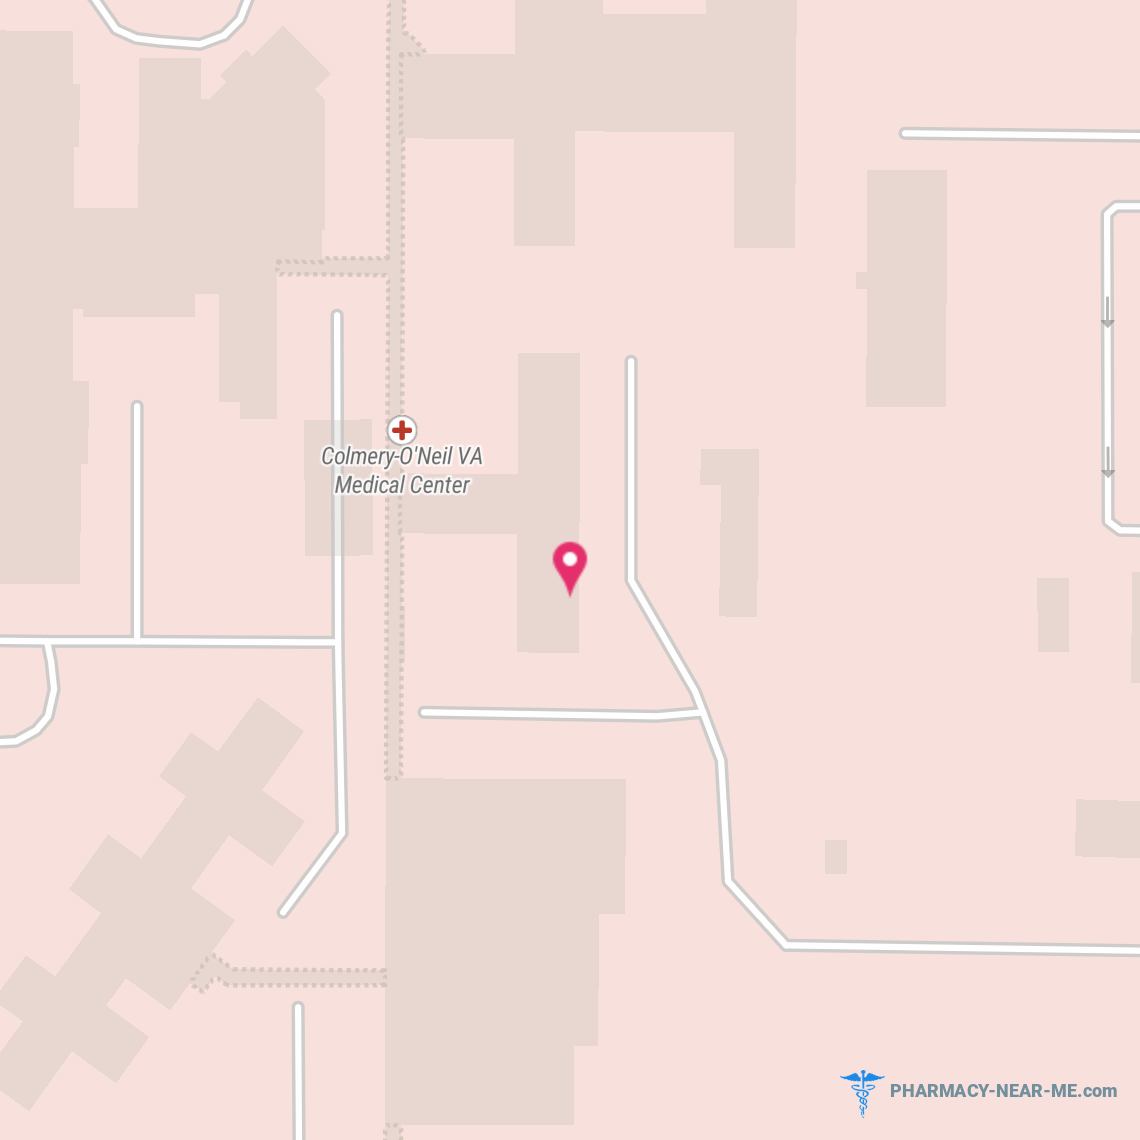 TOPEKA VAMC PHARMACY - Pharmacy Hours, Phone, Reviews & Information: 2200 Southwest Gage Boulevard, Topeka, Kansas 66622, United States